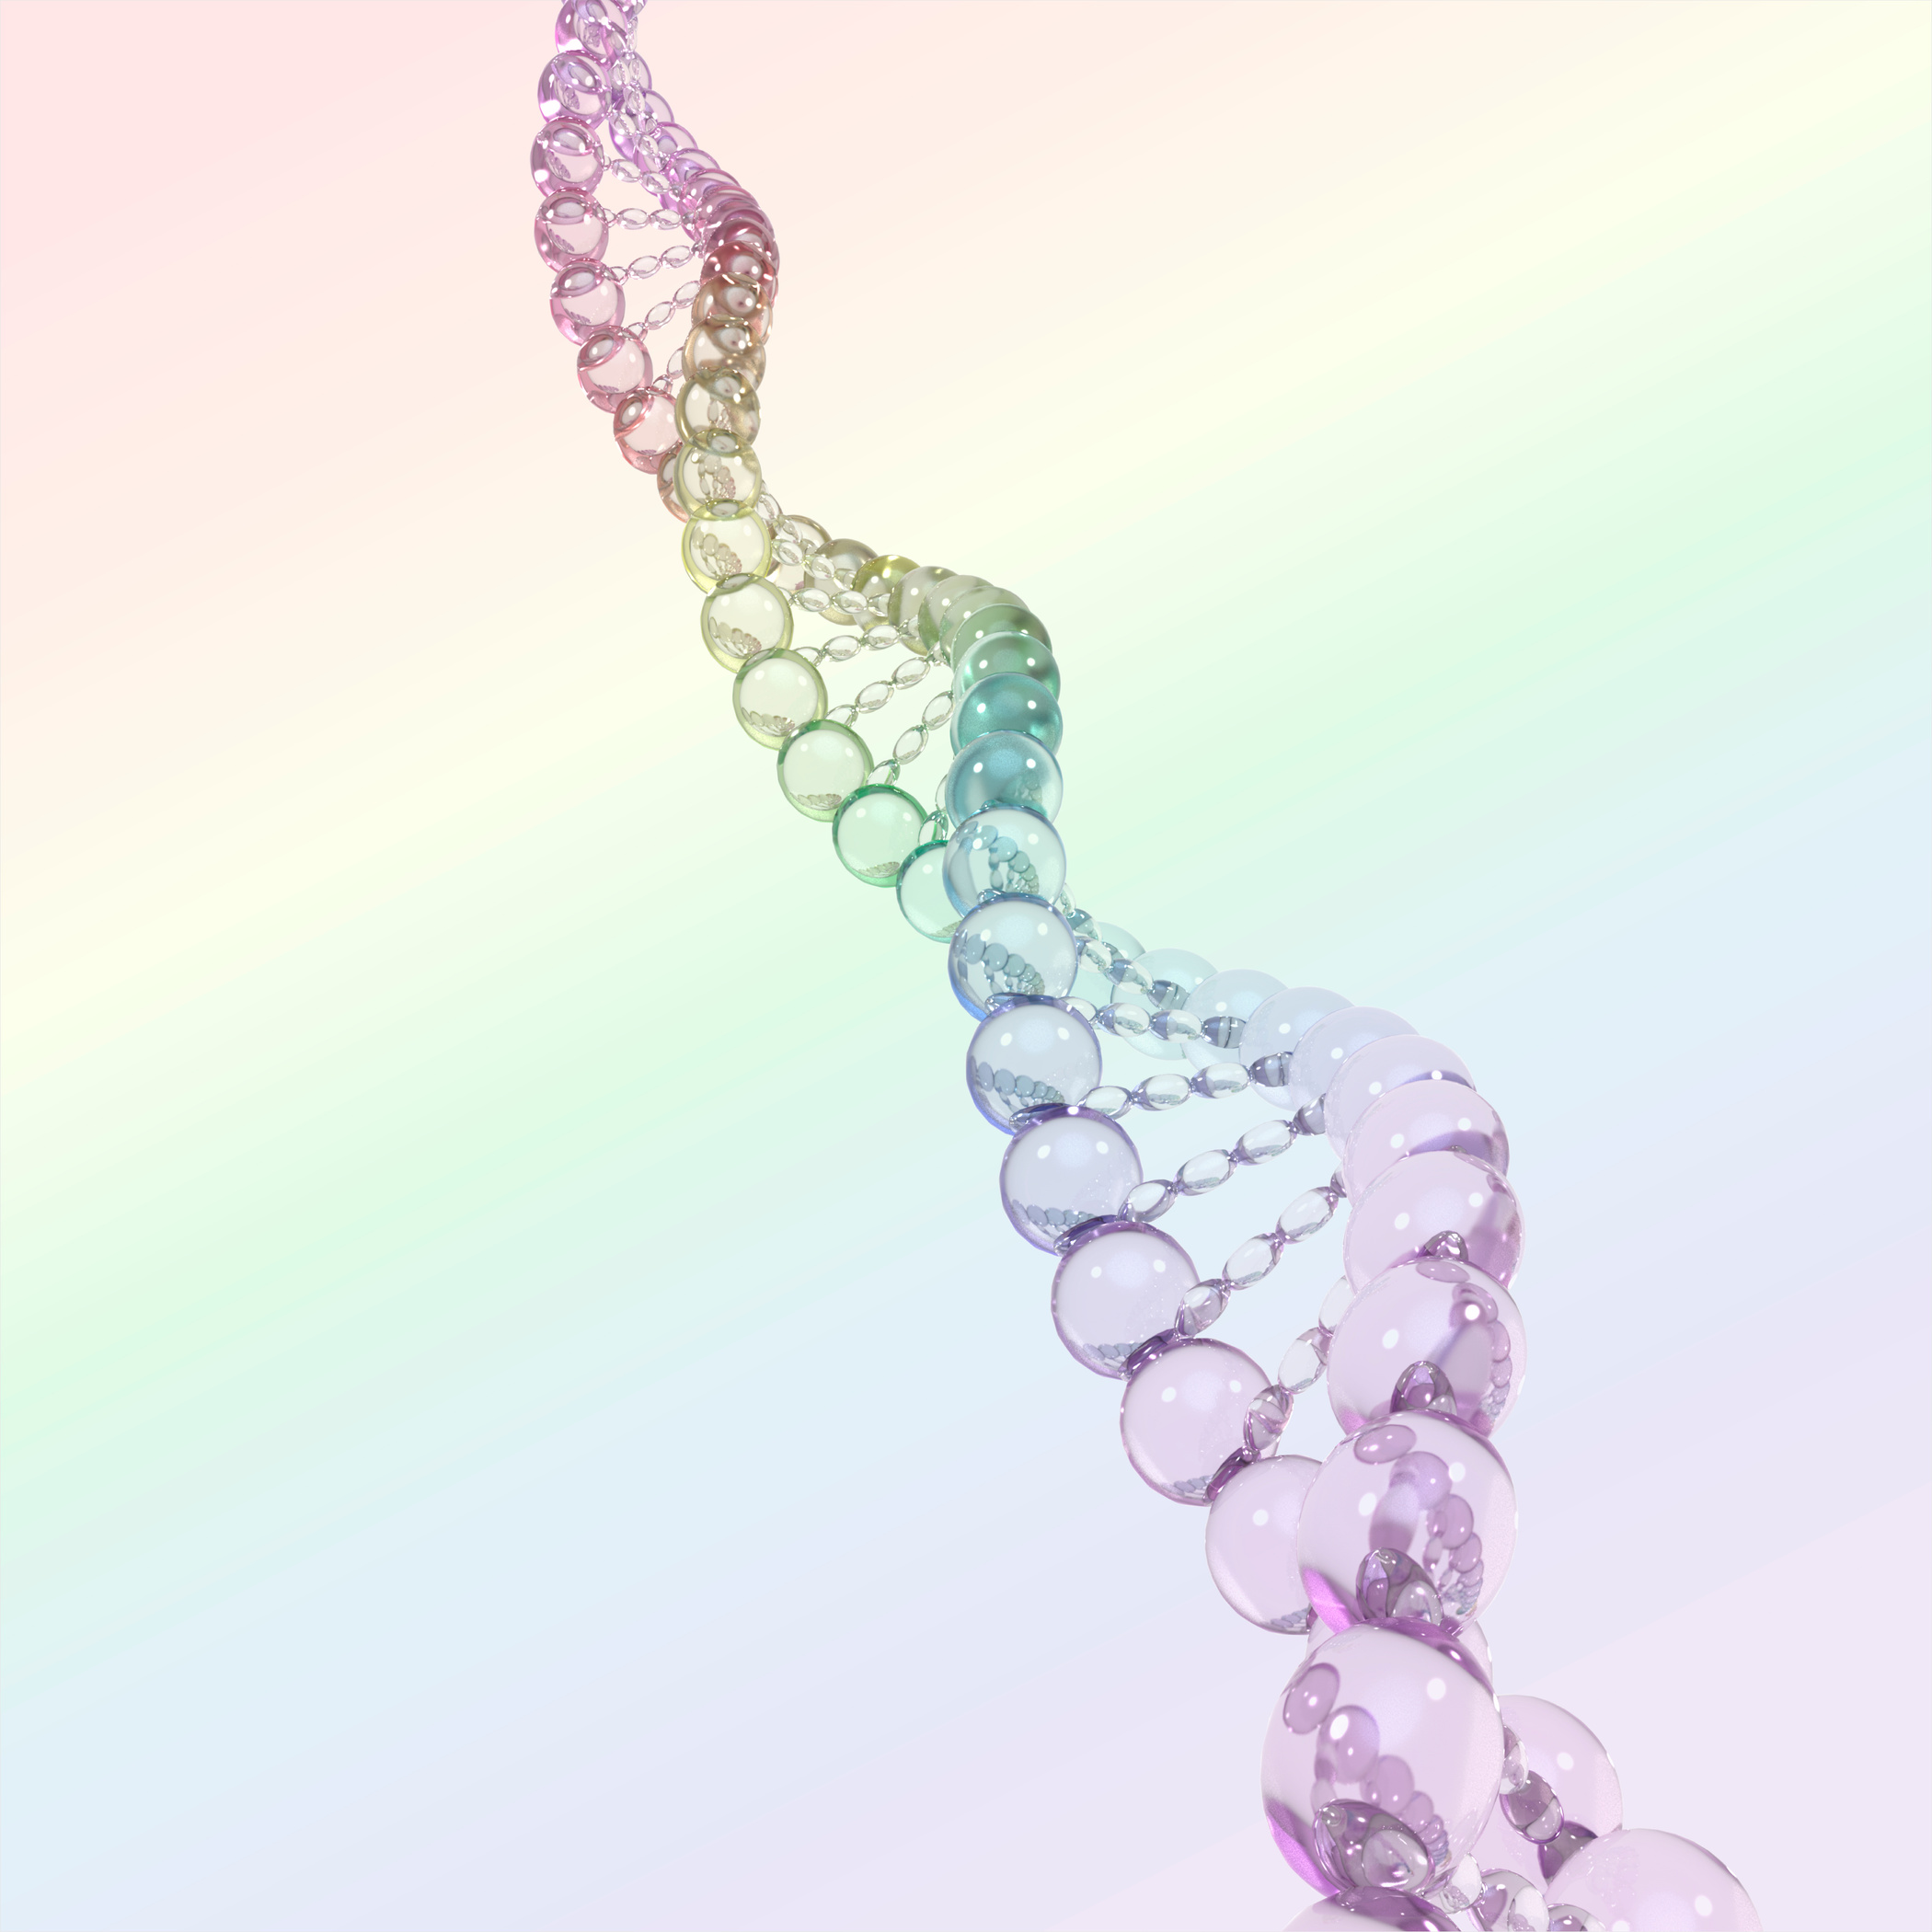 DNA strand. Diversity. 3D render